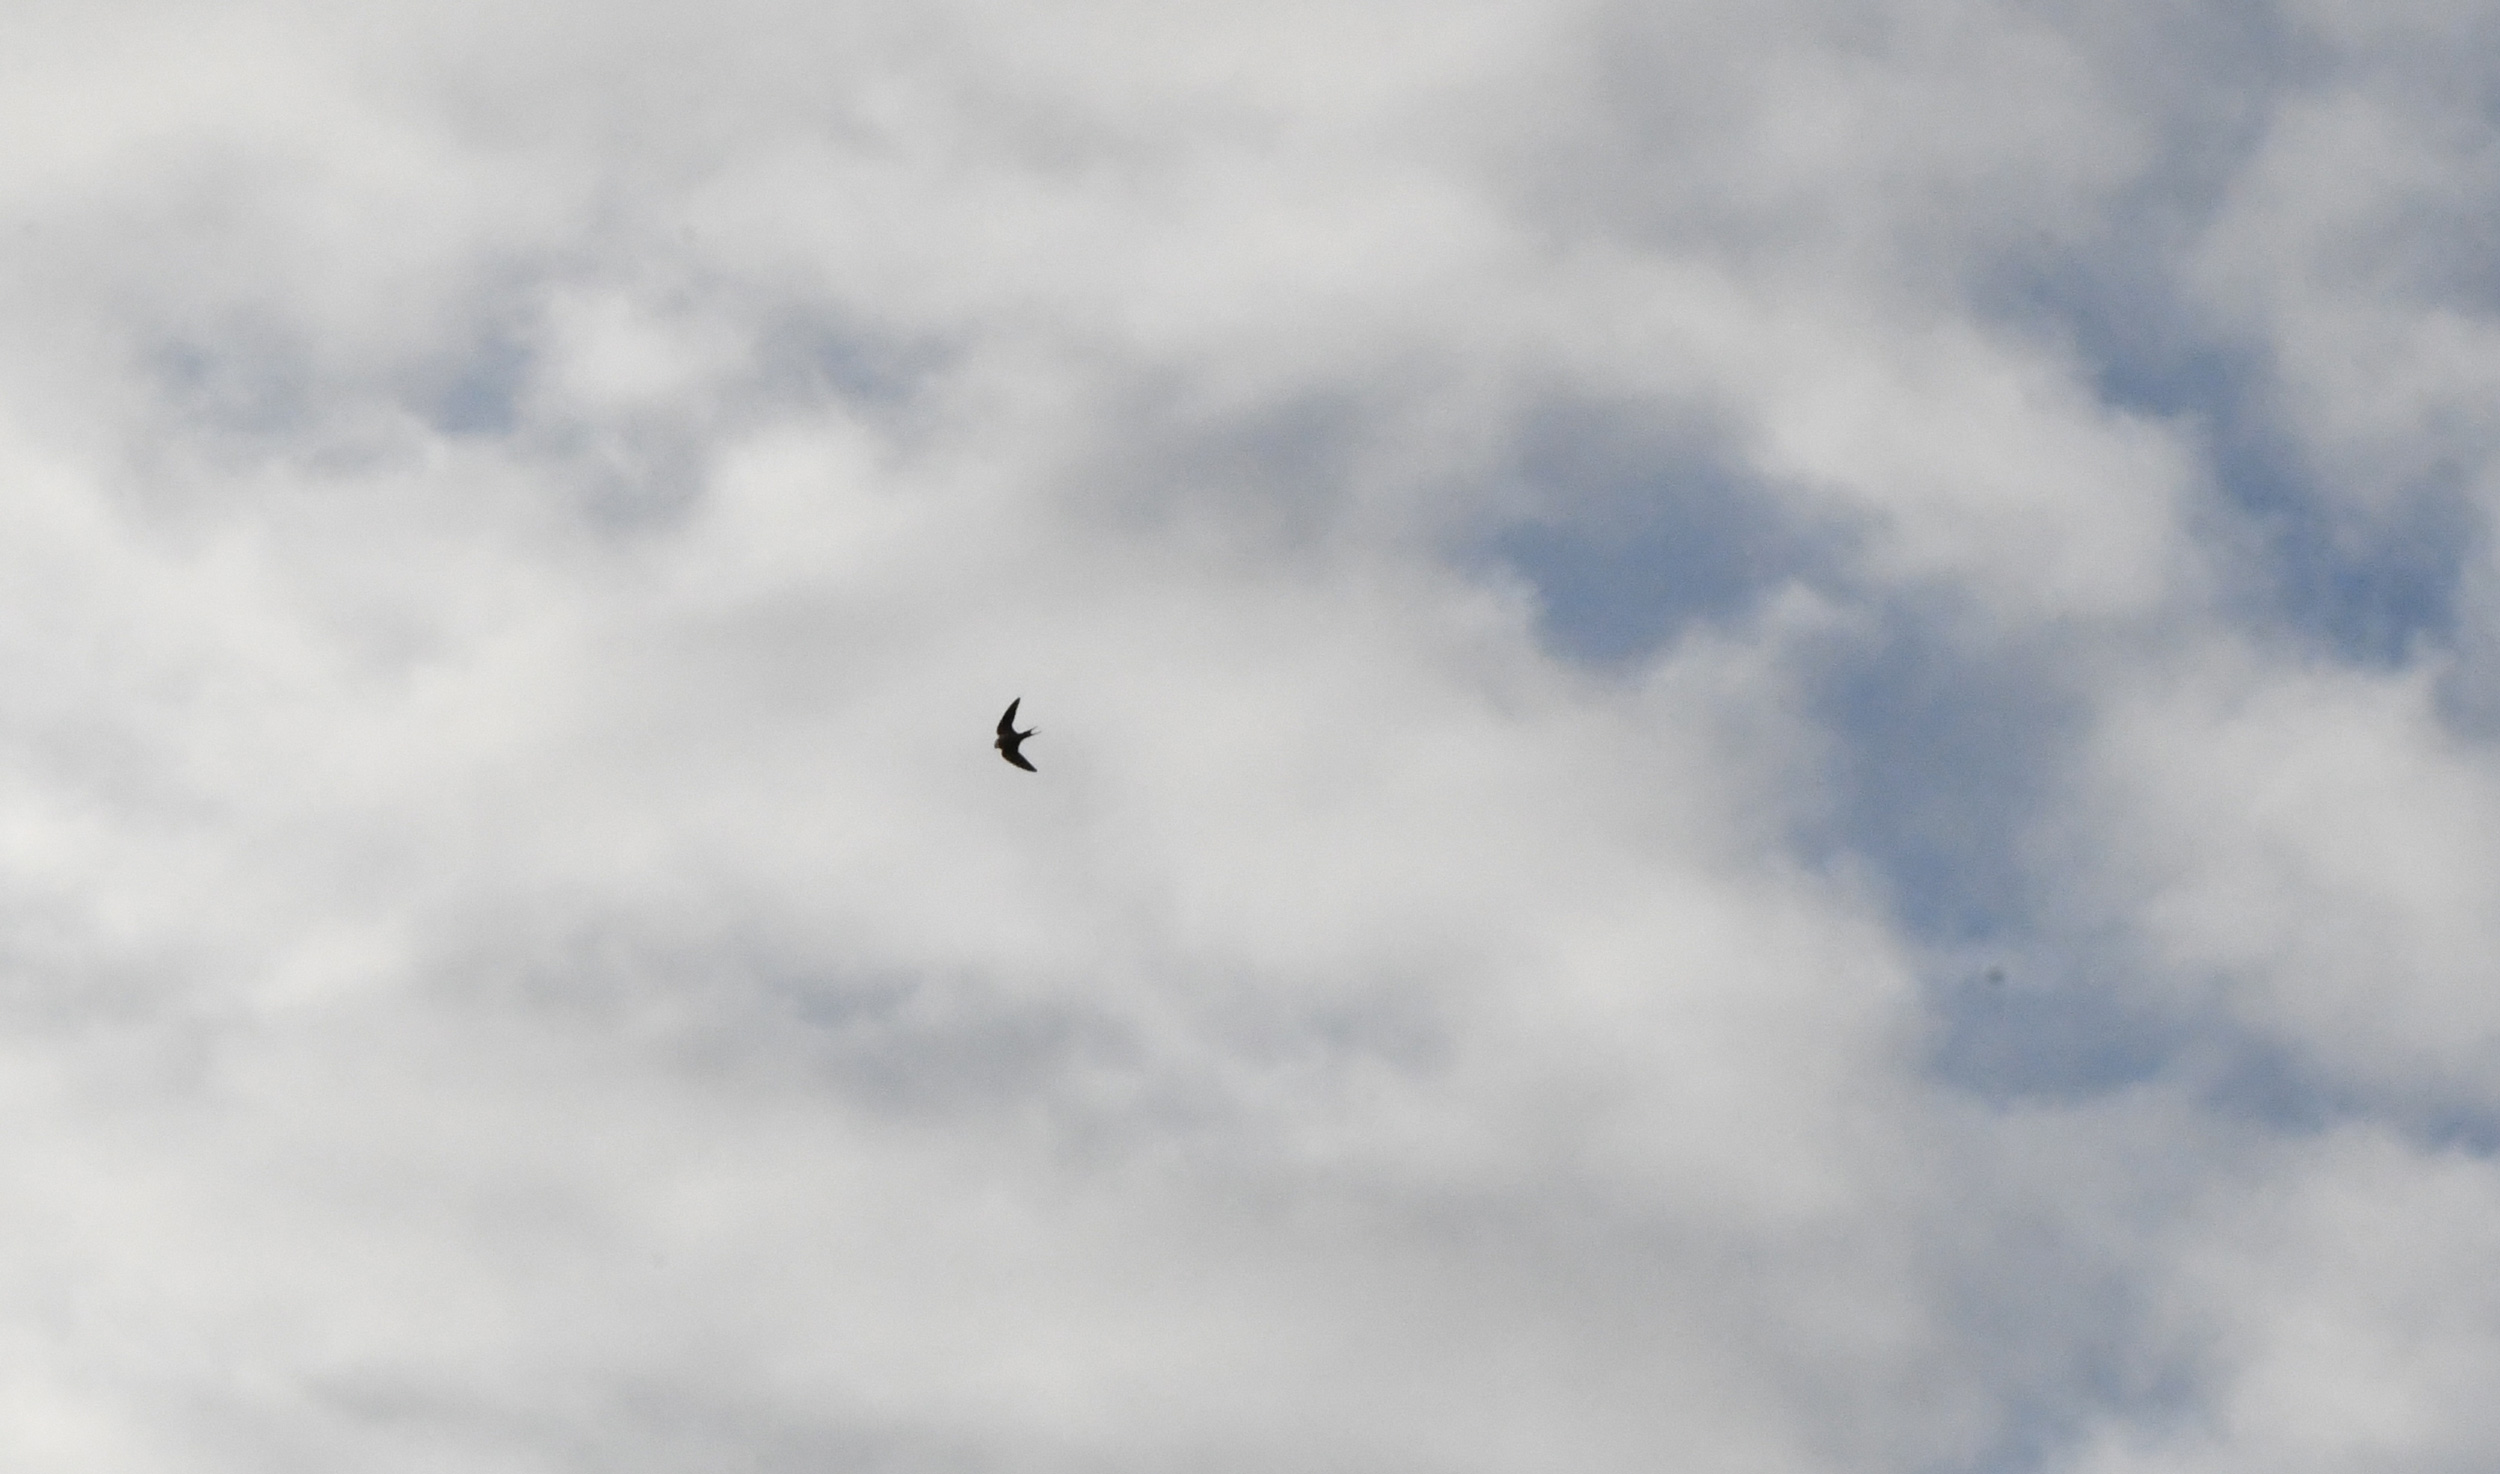 Bird against sky, Prospect Park